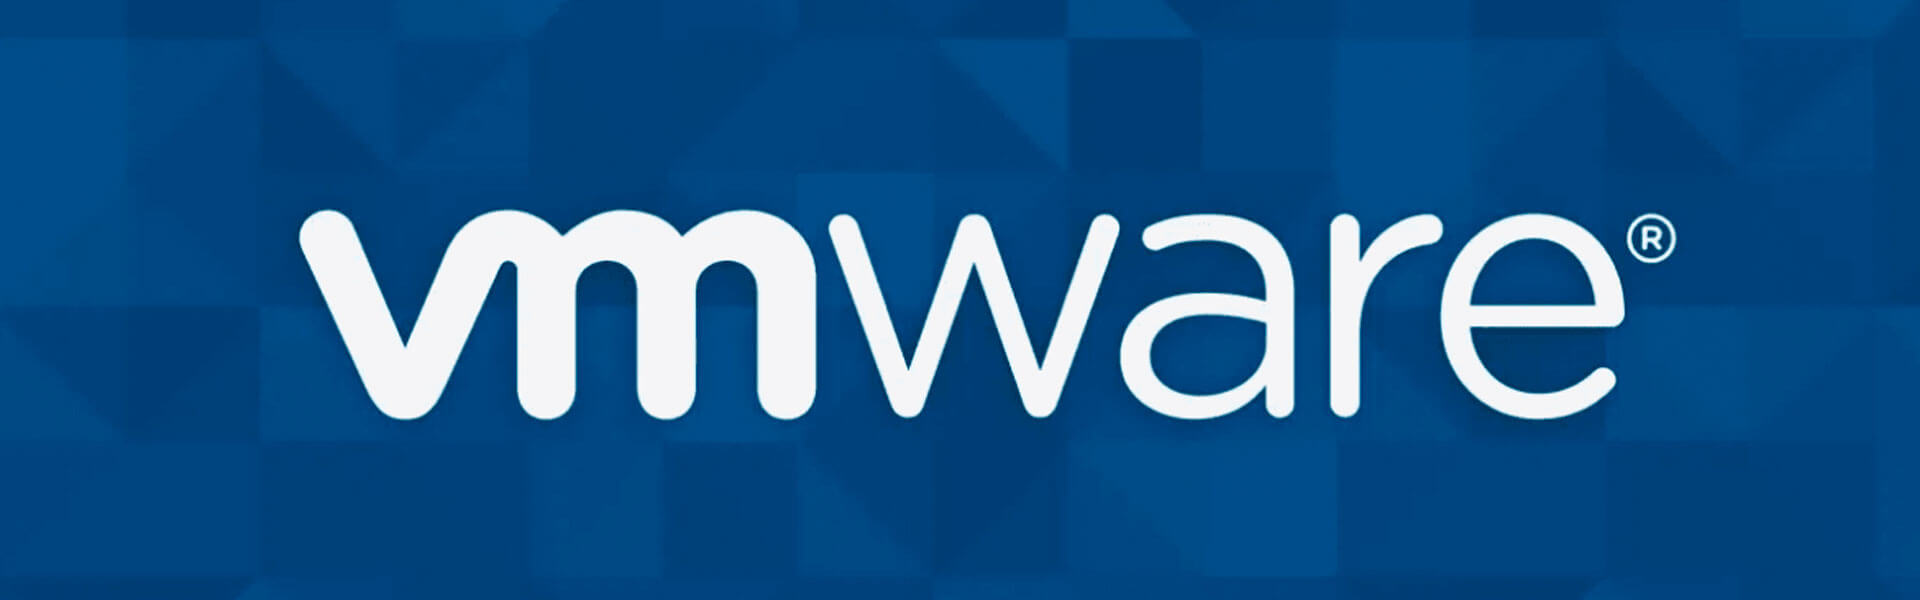 vmware-banner